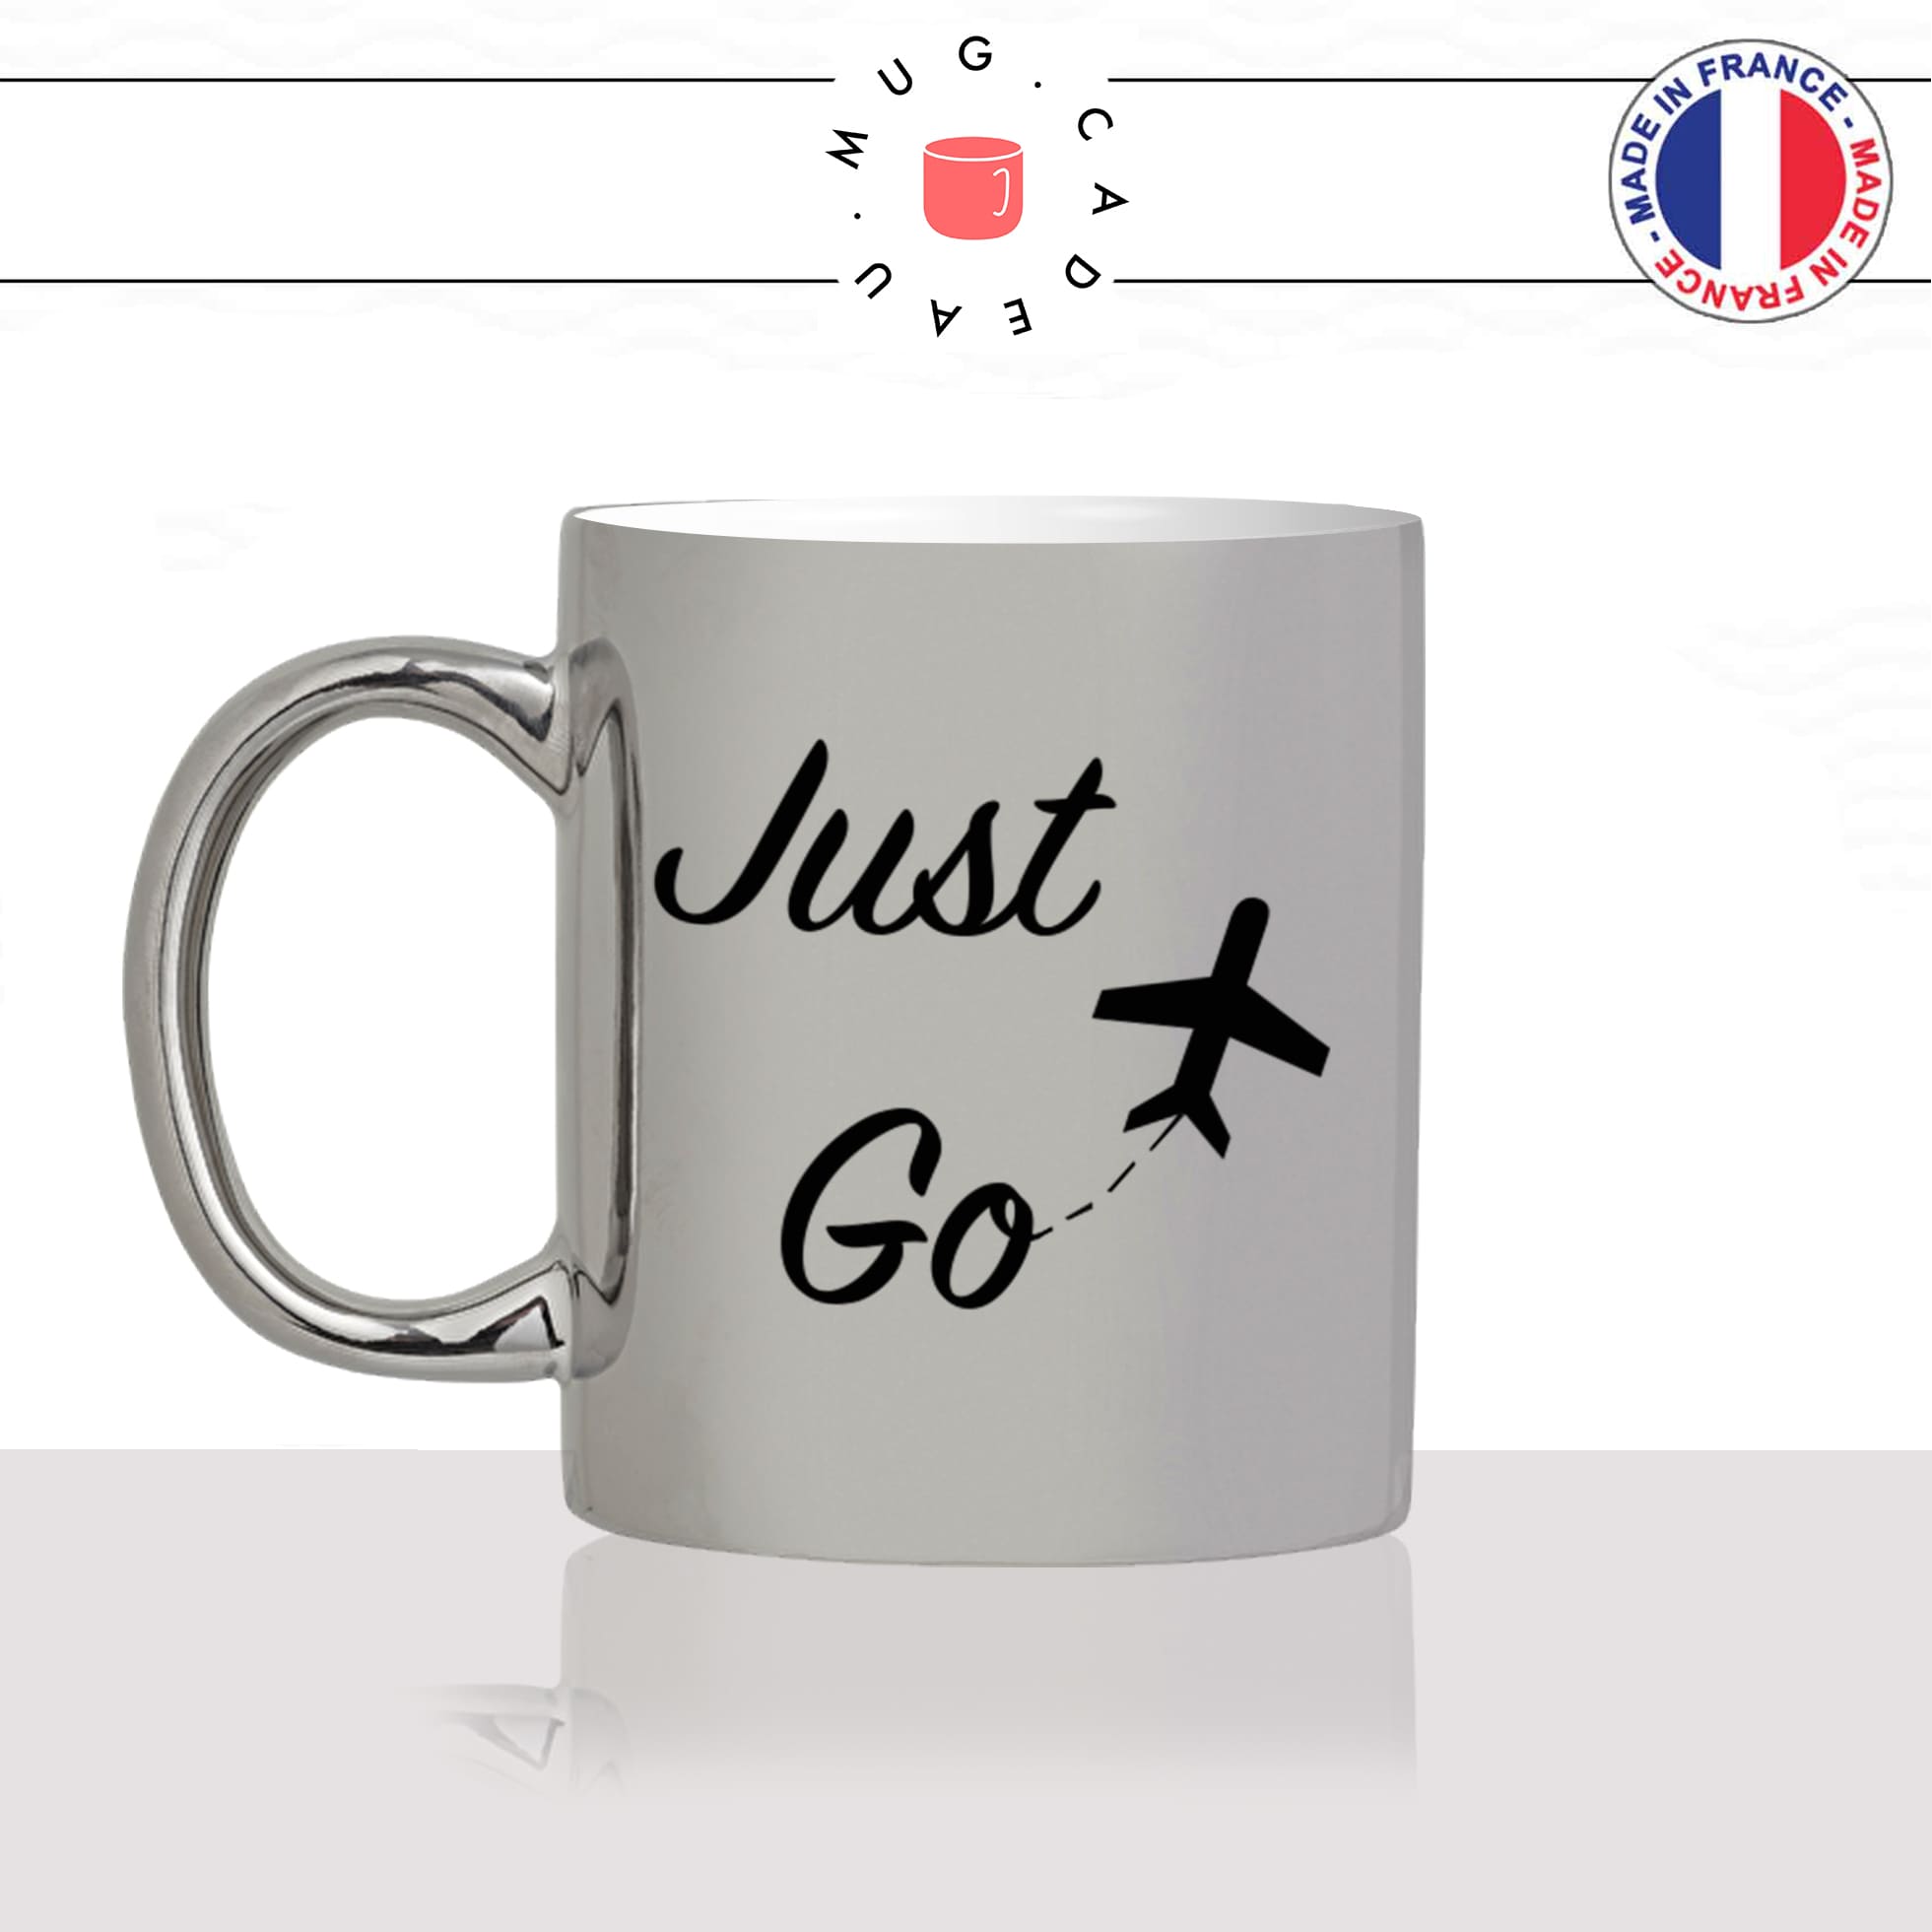 mug-tasse-argent-argenté-silver-just-go-voyageur-anglais-voyage-travel-free-avion-vacance-influenceur-humour-idée-cadeau-fun-cool-café-thé